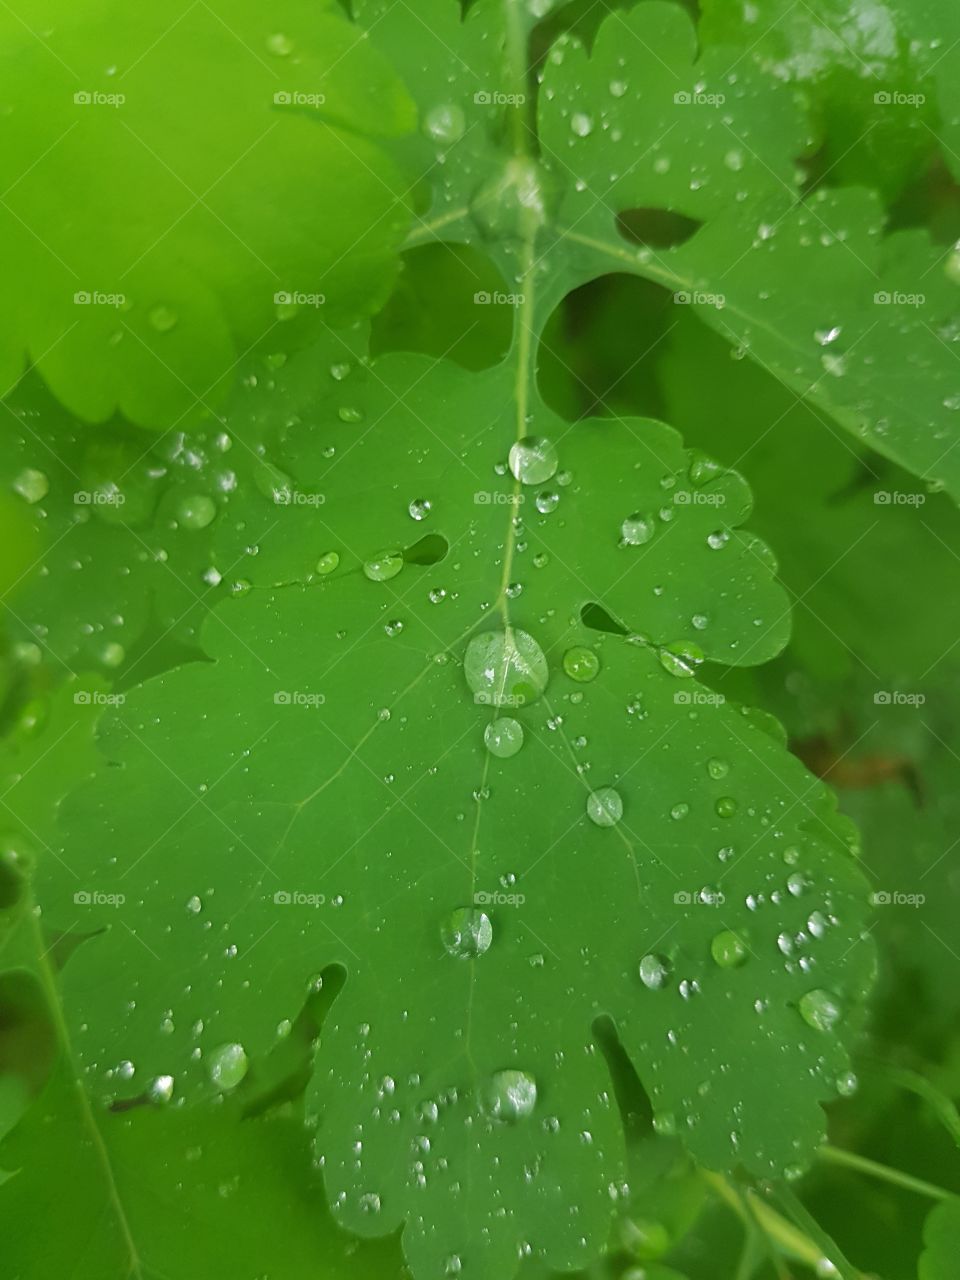 raindrop on leaves